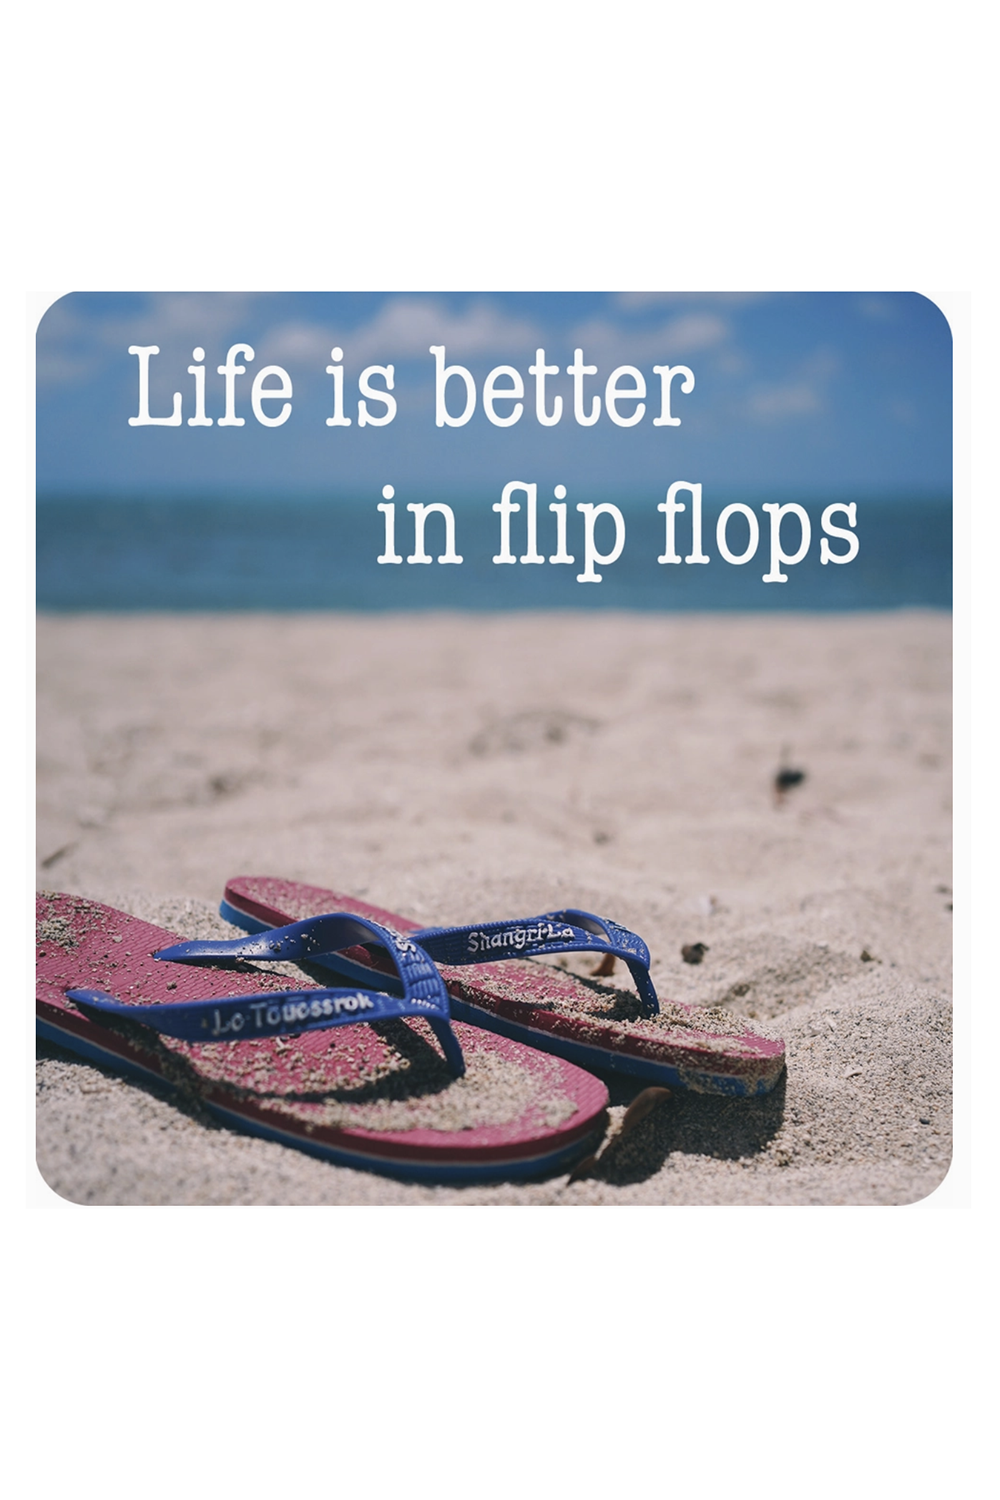 Humor Coaster - Flip Flops